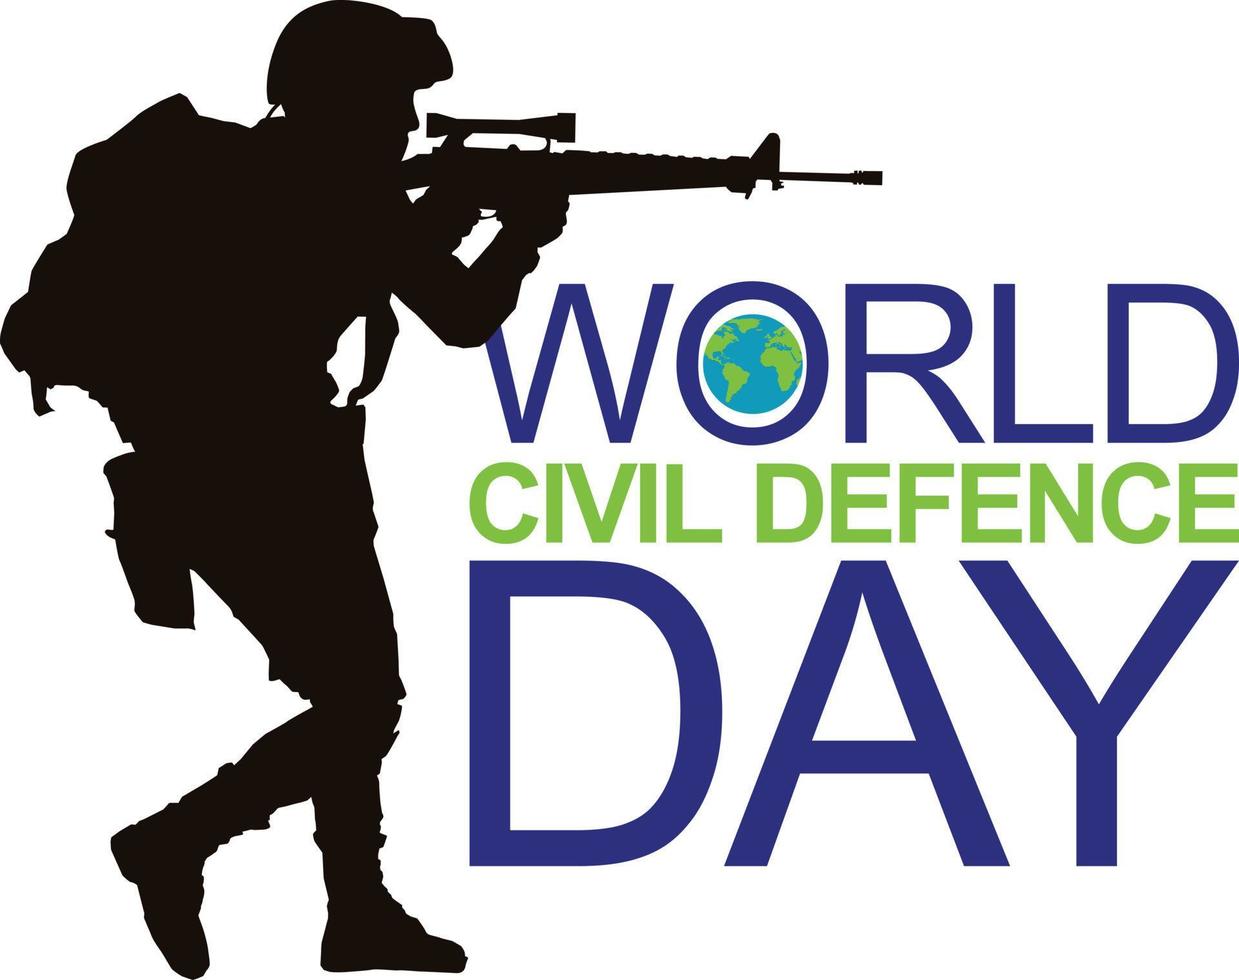 dia mundial de la defensa civil vector